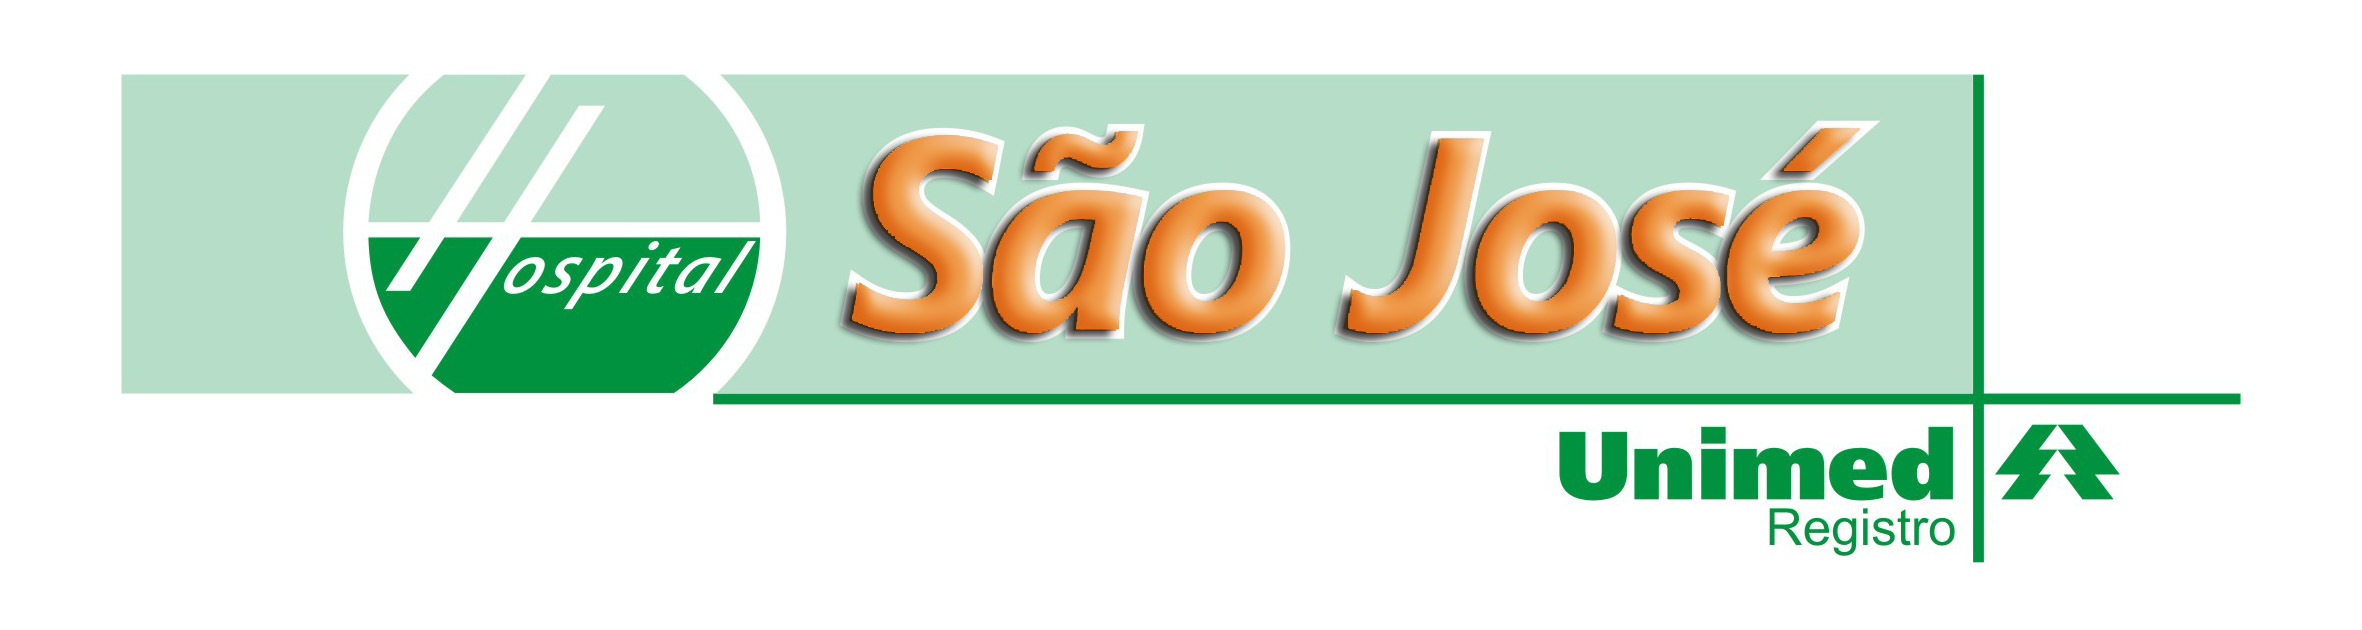 Hospital São José - Logo